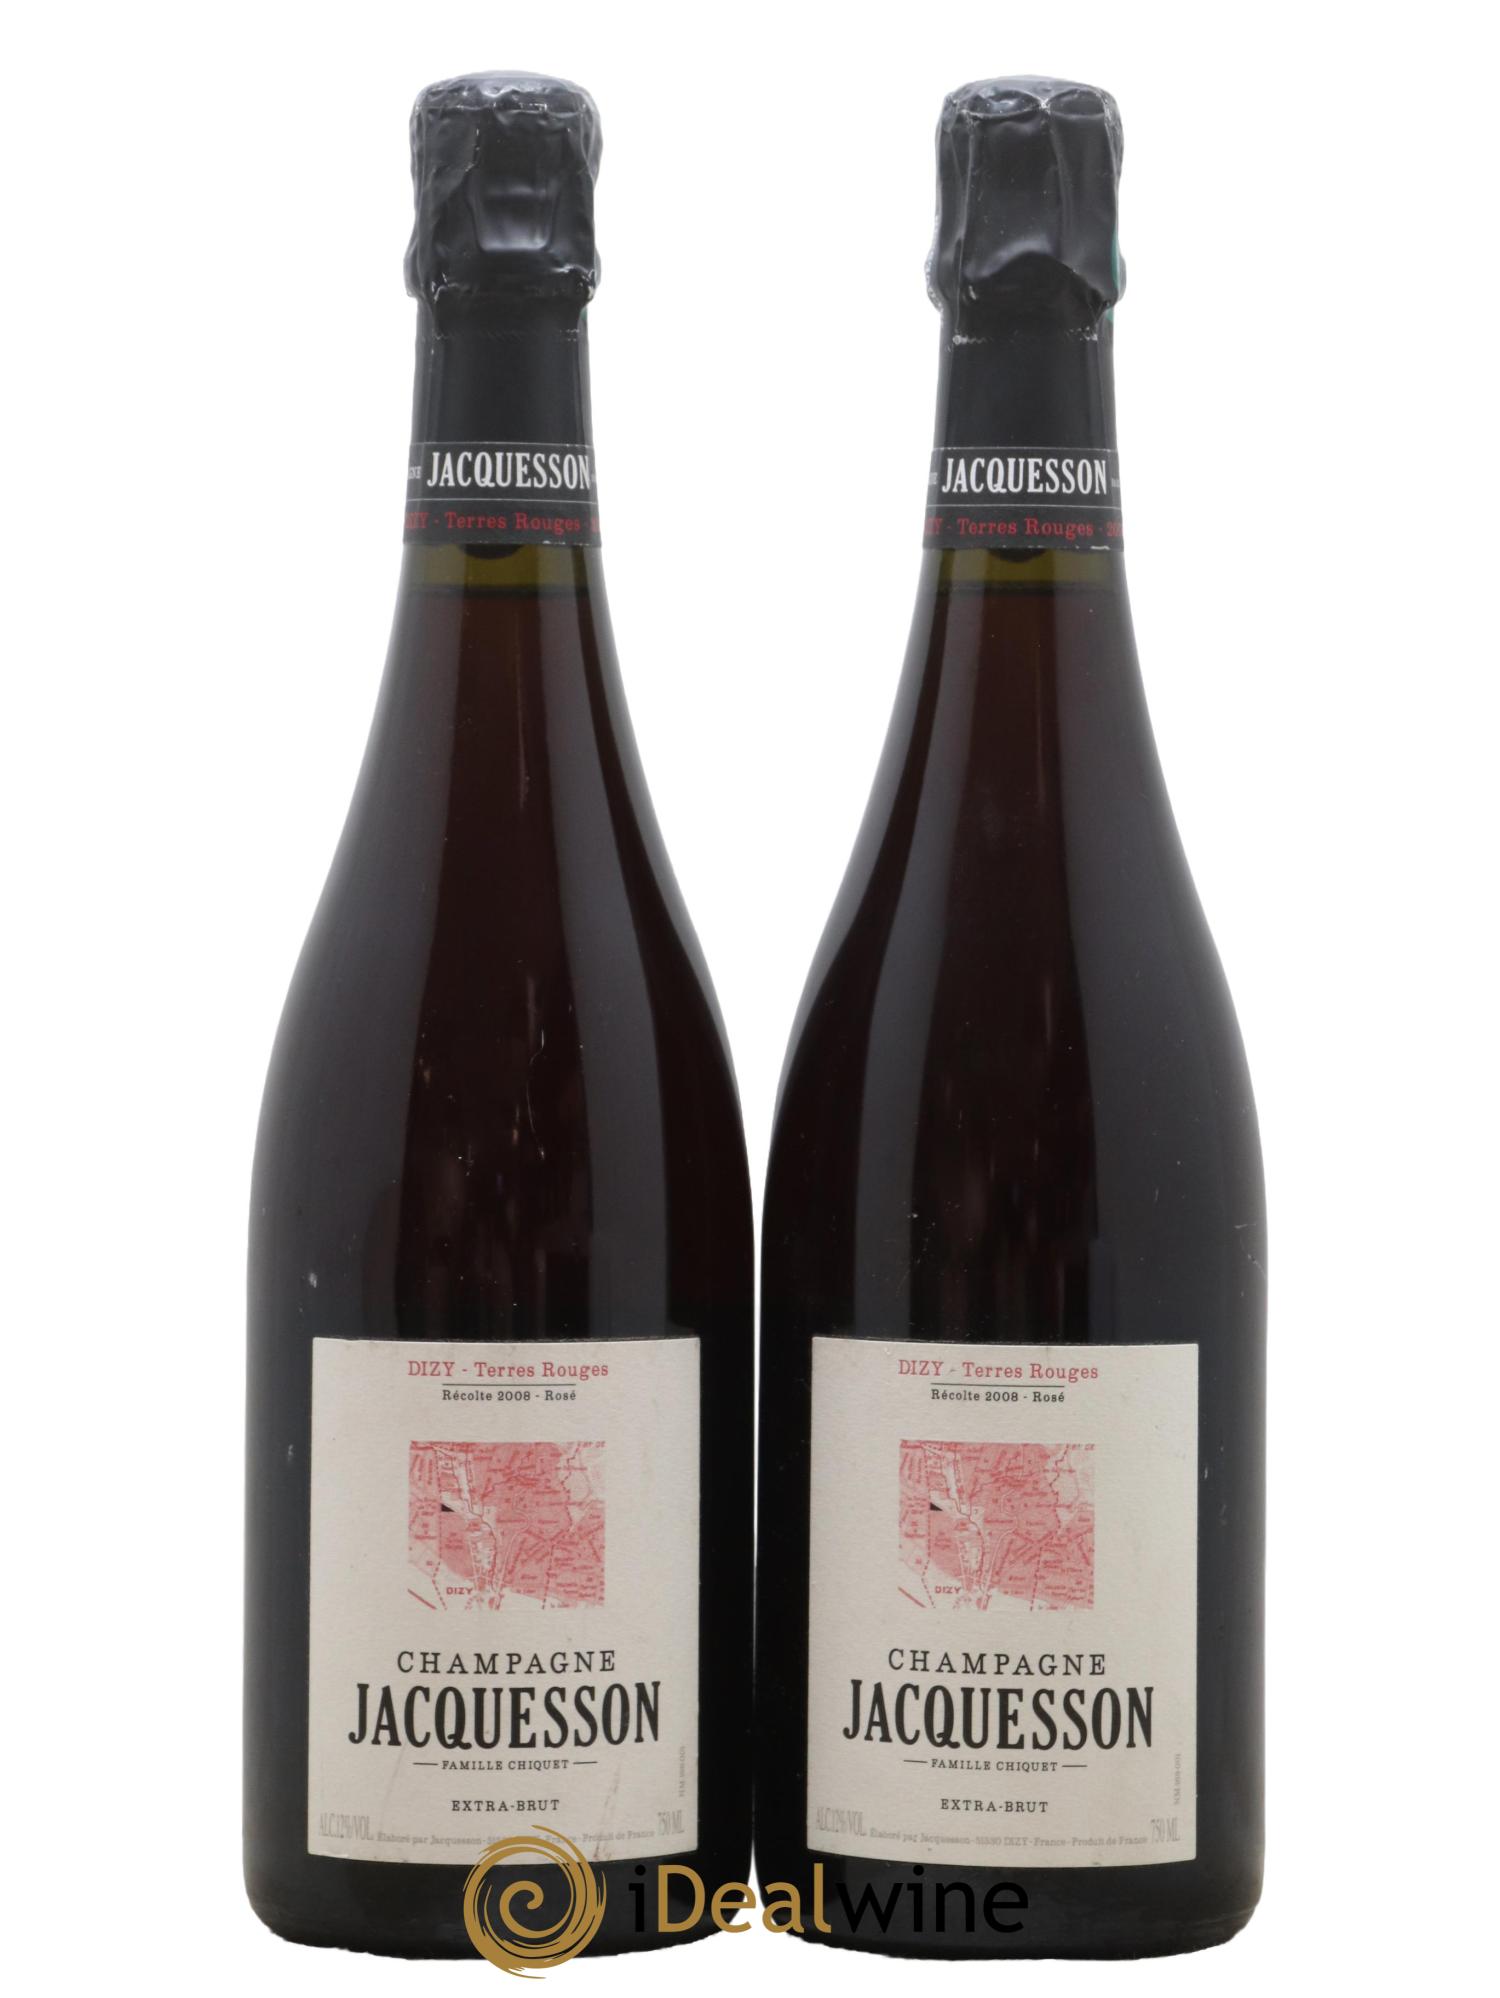 Champagne Jacquesson Dizy Terres Rouges (Rosé effervescent)